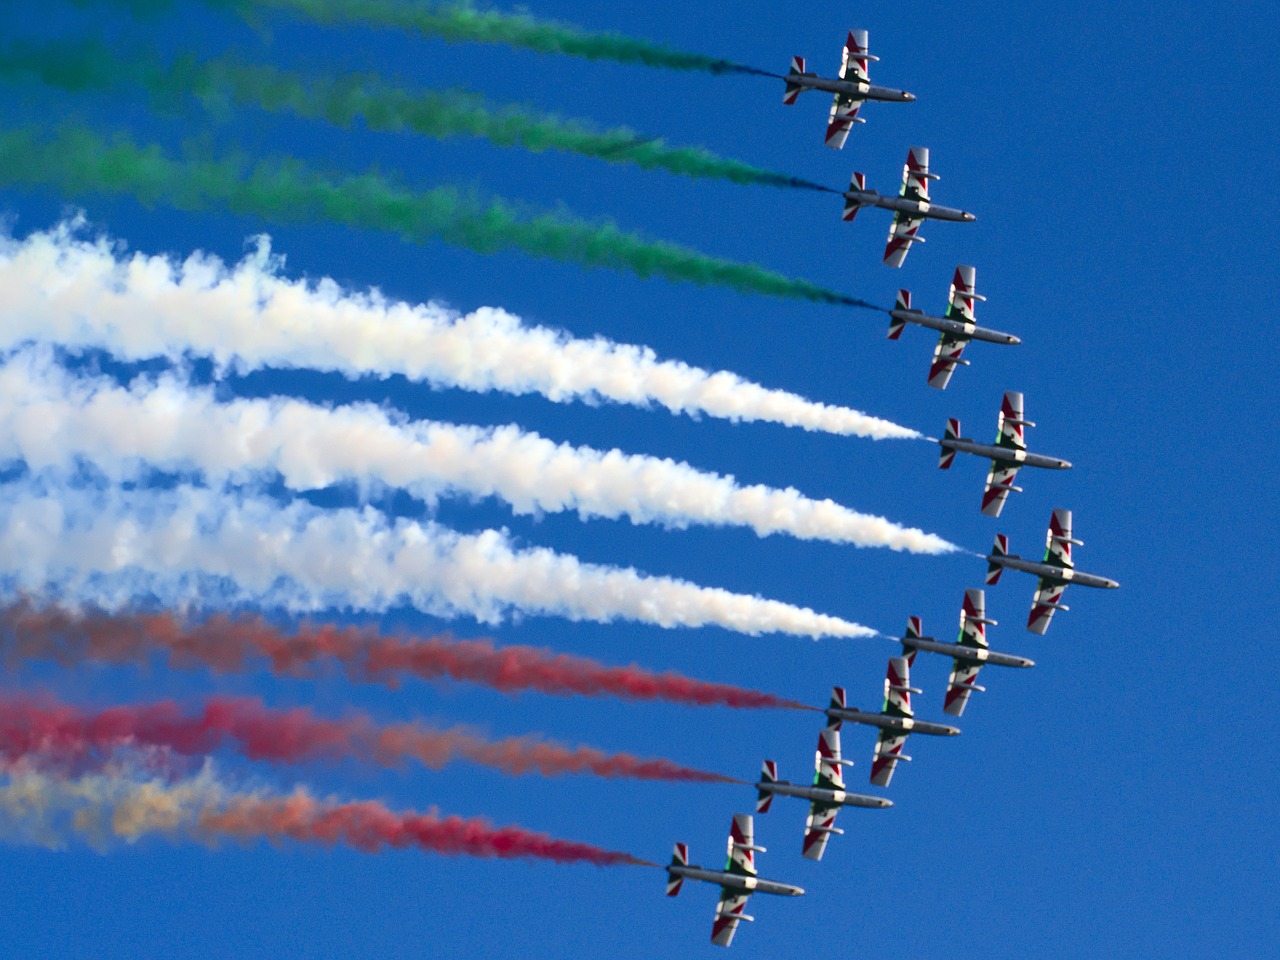 frecce tricolori aircraft sky free photo